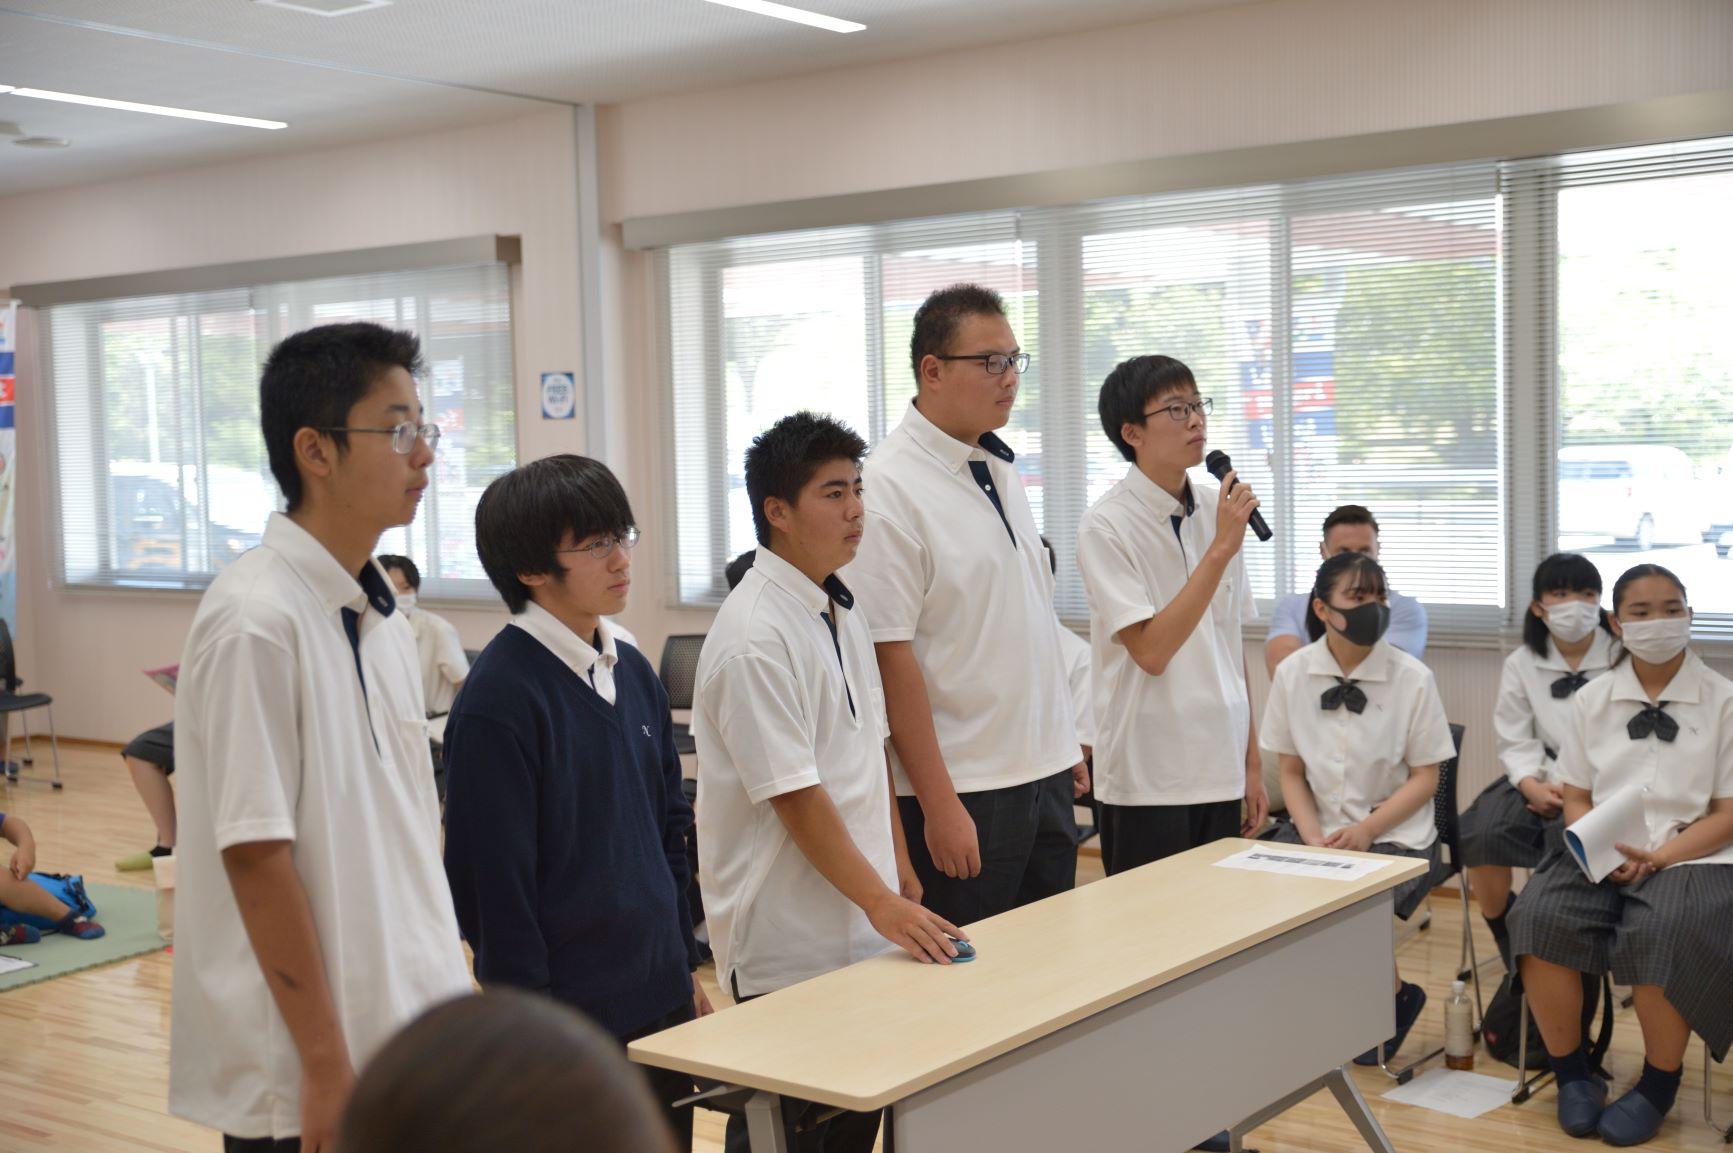 オンライン交流会にて、横一列に並んで交流に臨む仁賀保高校の男子生徒5名の写真。左端の生徒がマイクを持って話をし、中央の生徒が卓上のマウスを操作する様子が確認できる